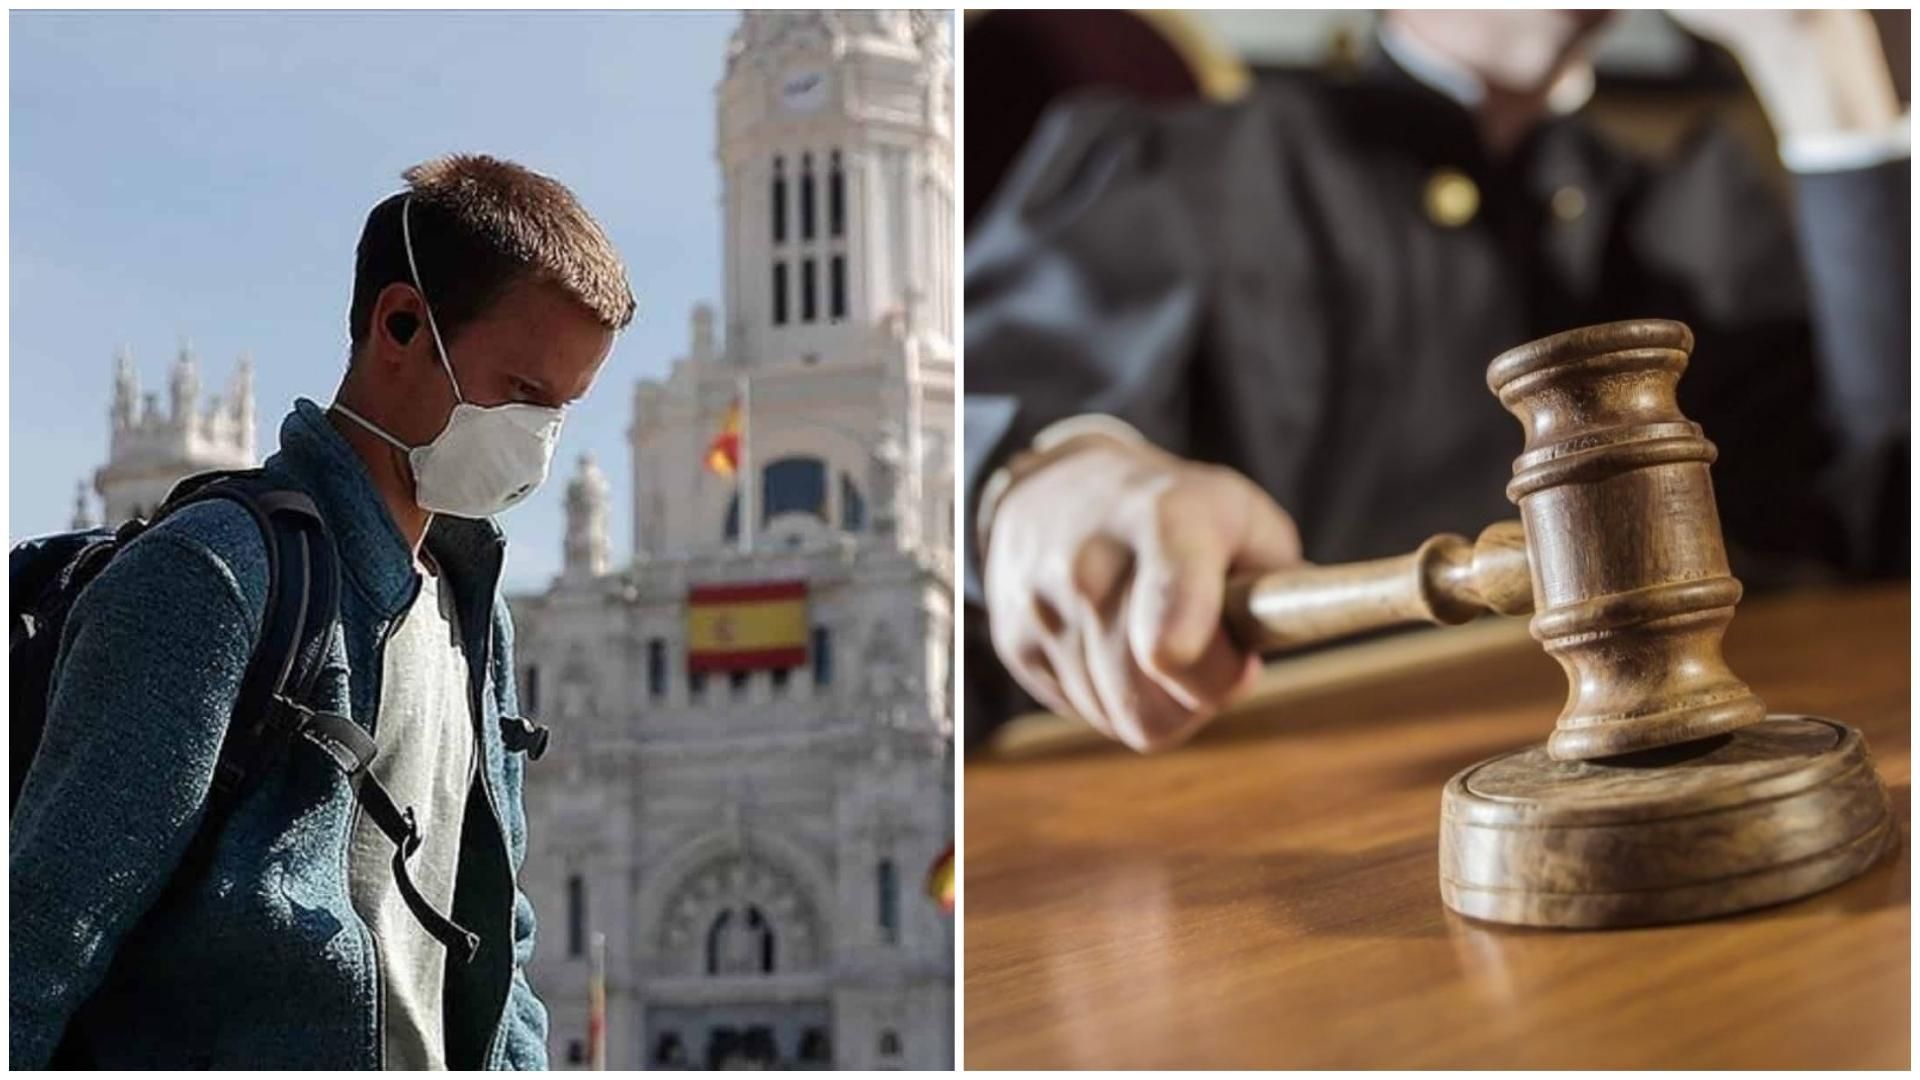 Іспаніці судитимуться з урядом через смерть родичів від COVID-19